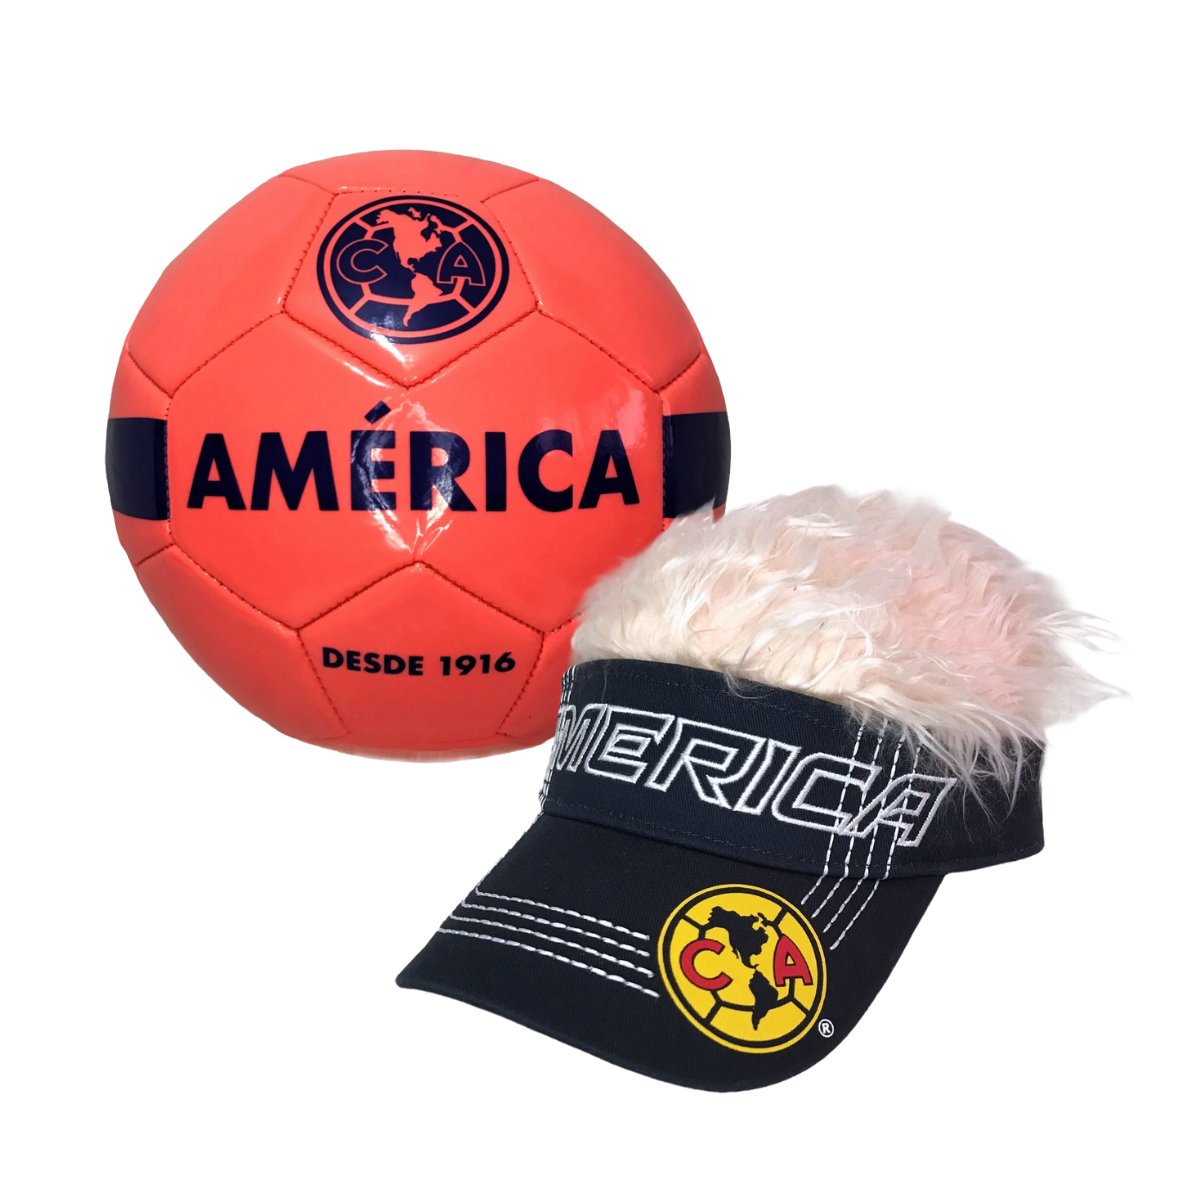 Balón Futbol Americano #5 Fs-100 Voit Juego Deporte